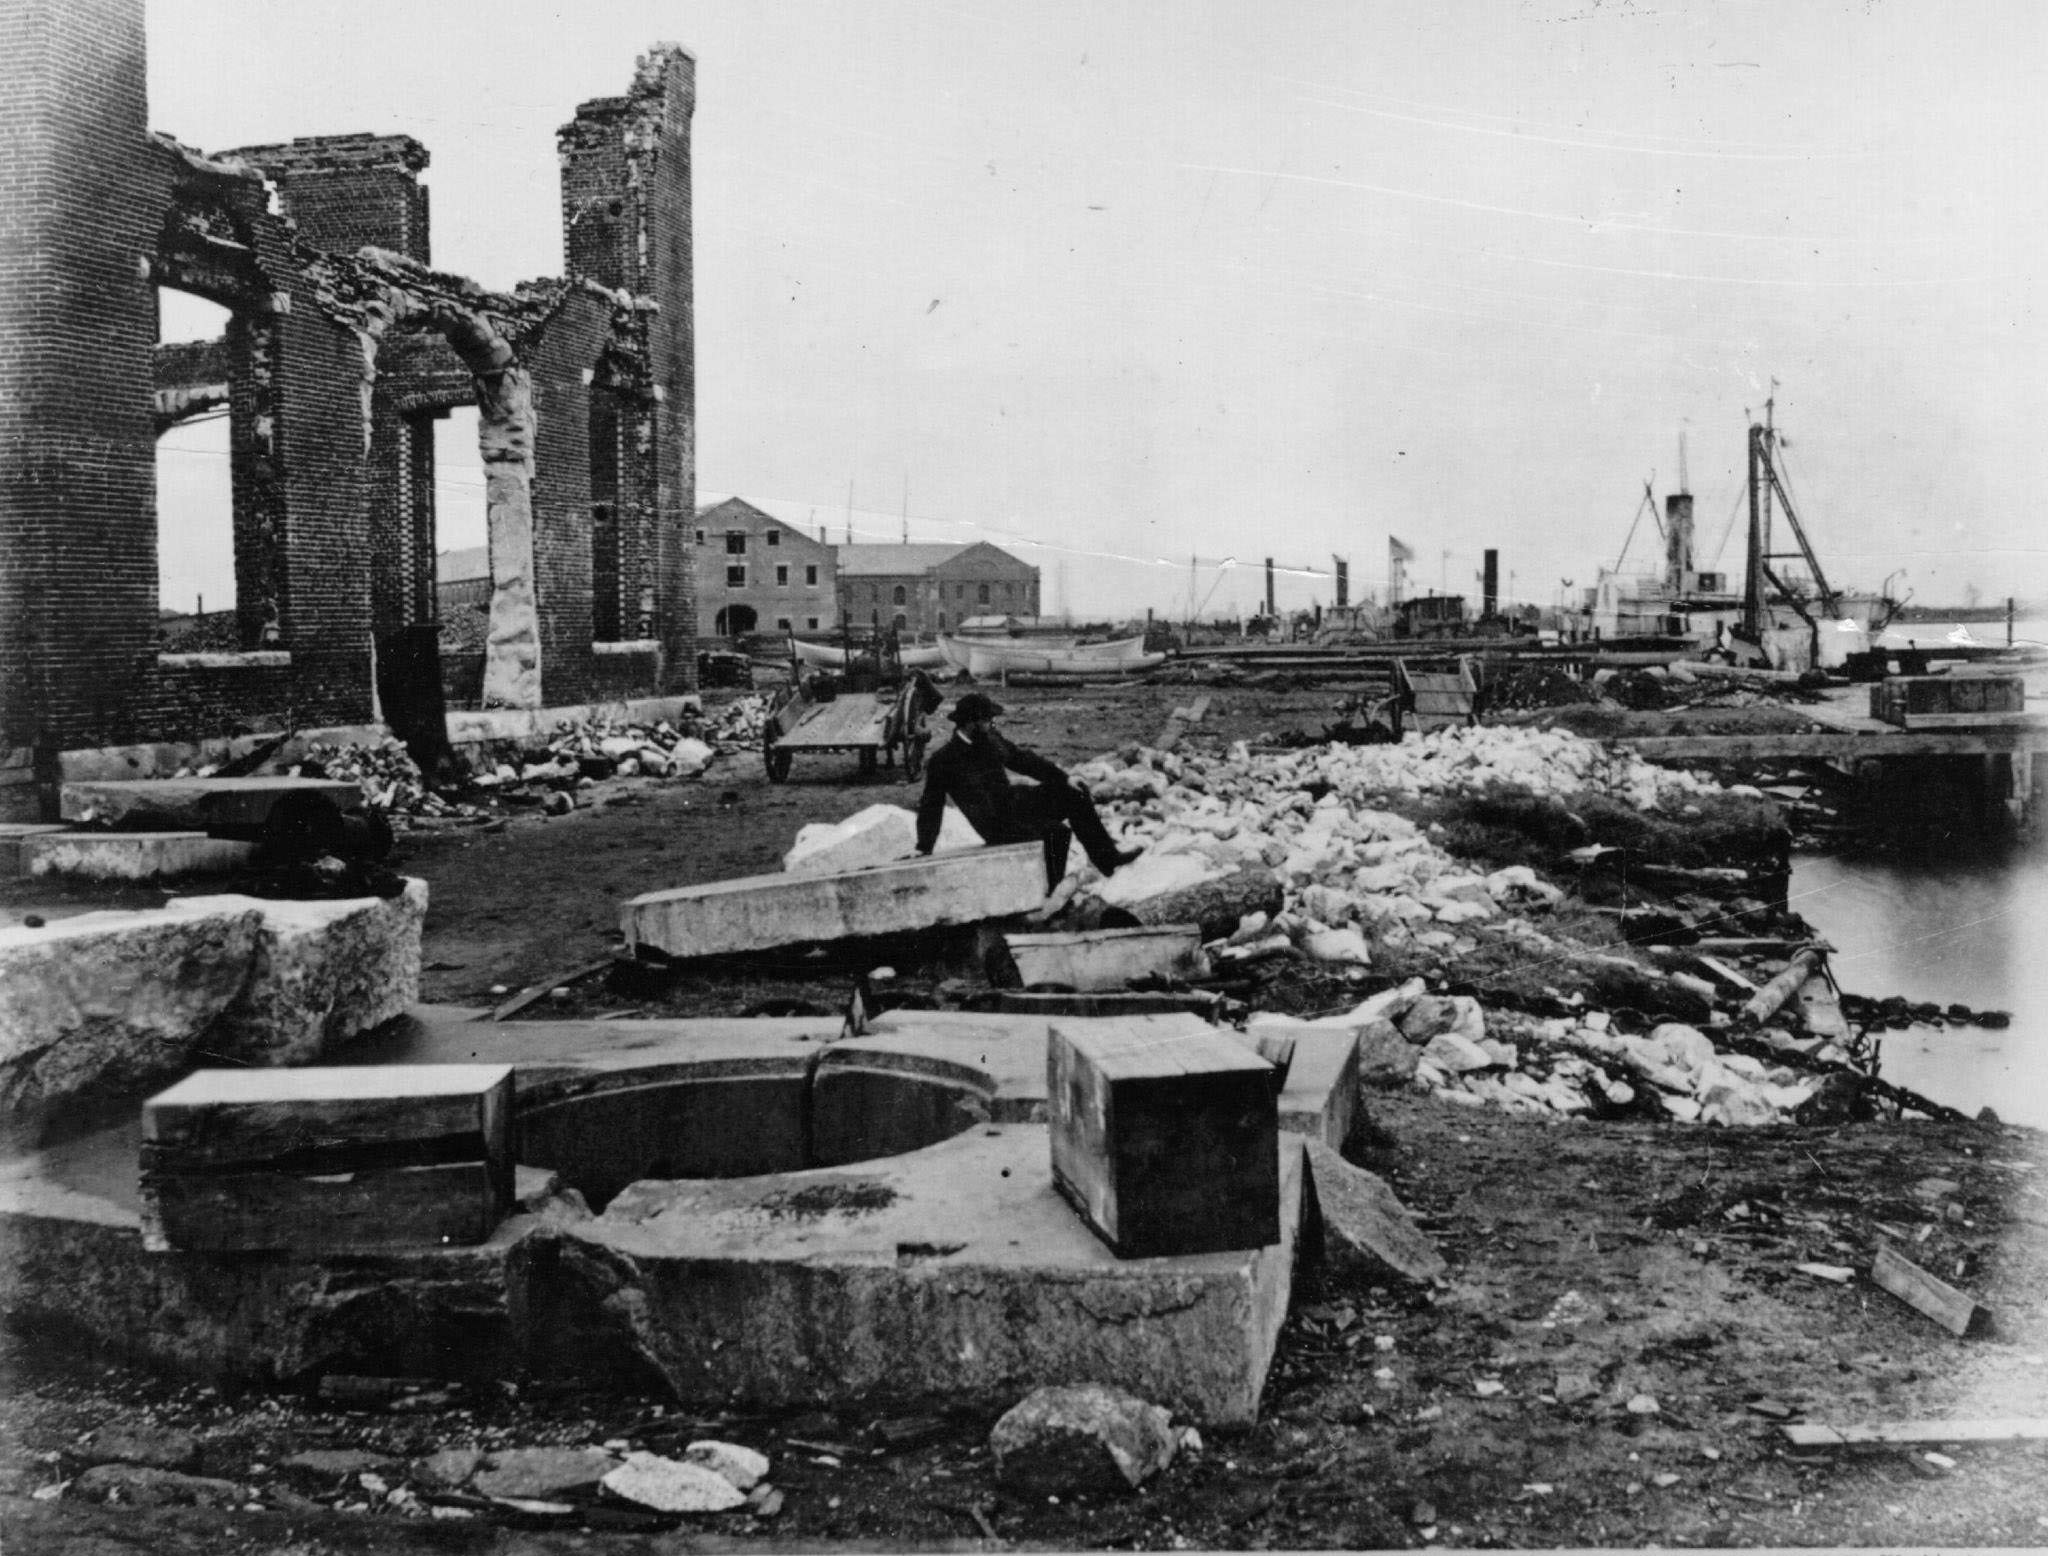 The ruins of Norfolk Navy Yard in Virginia, 1870s